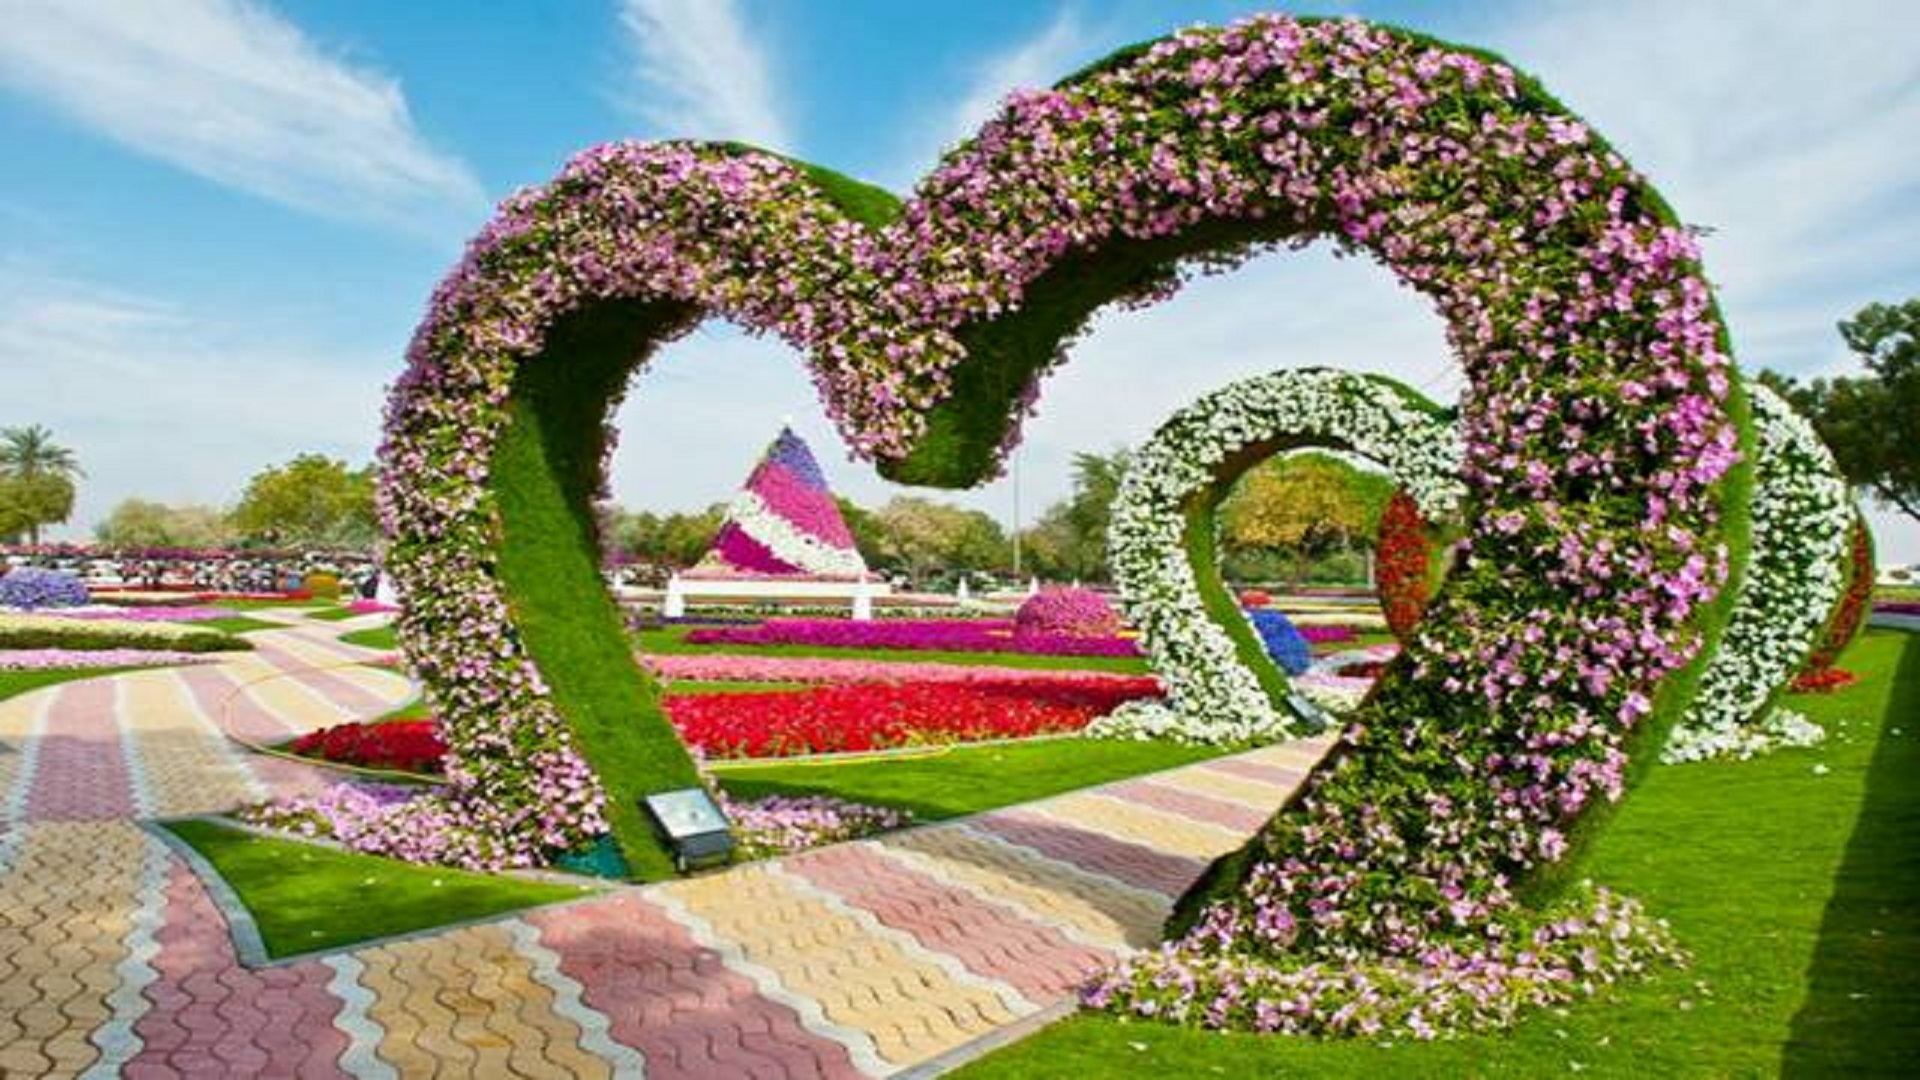 Garden Flowers Hd 4k Background Wallpaperss Free For Desktop